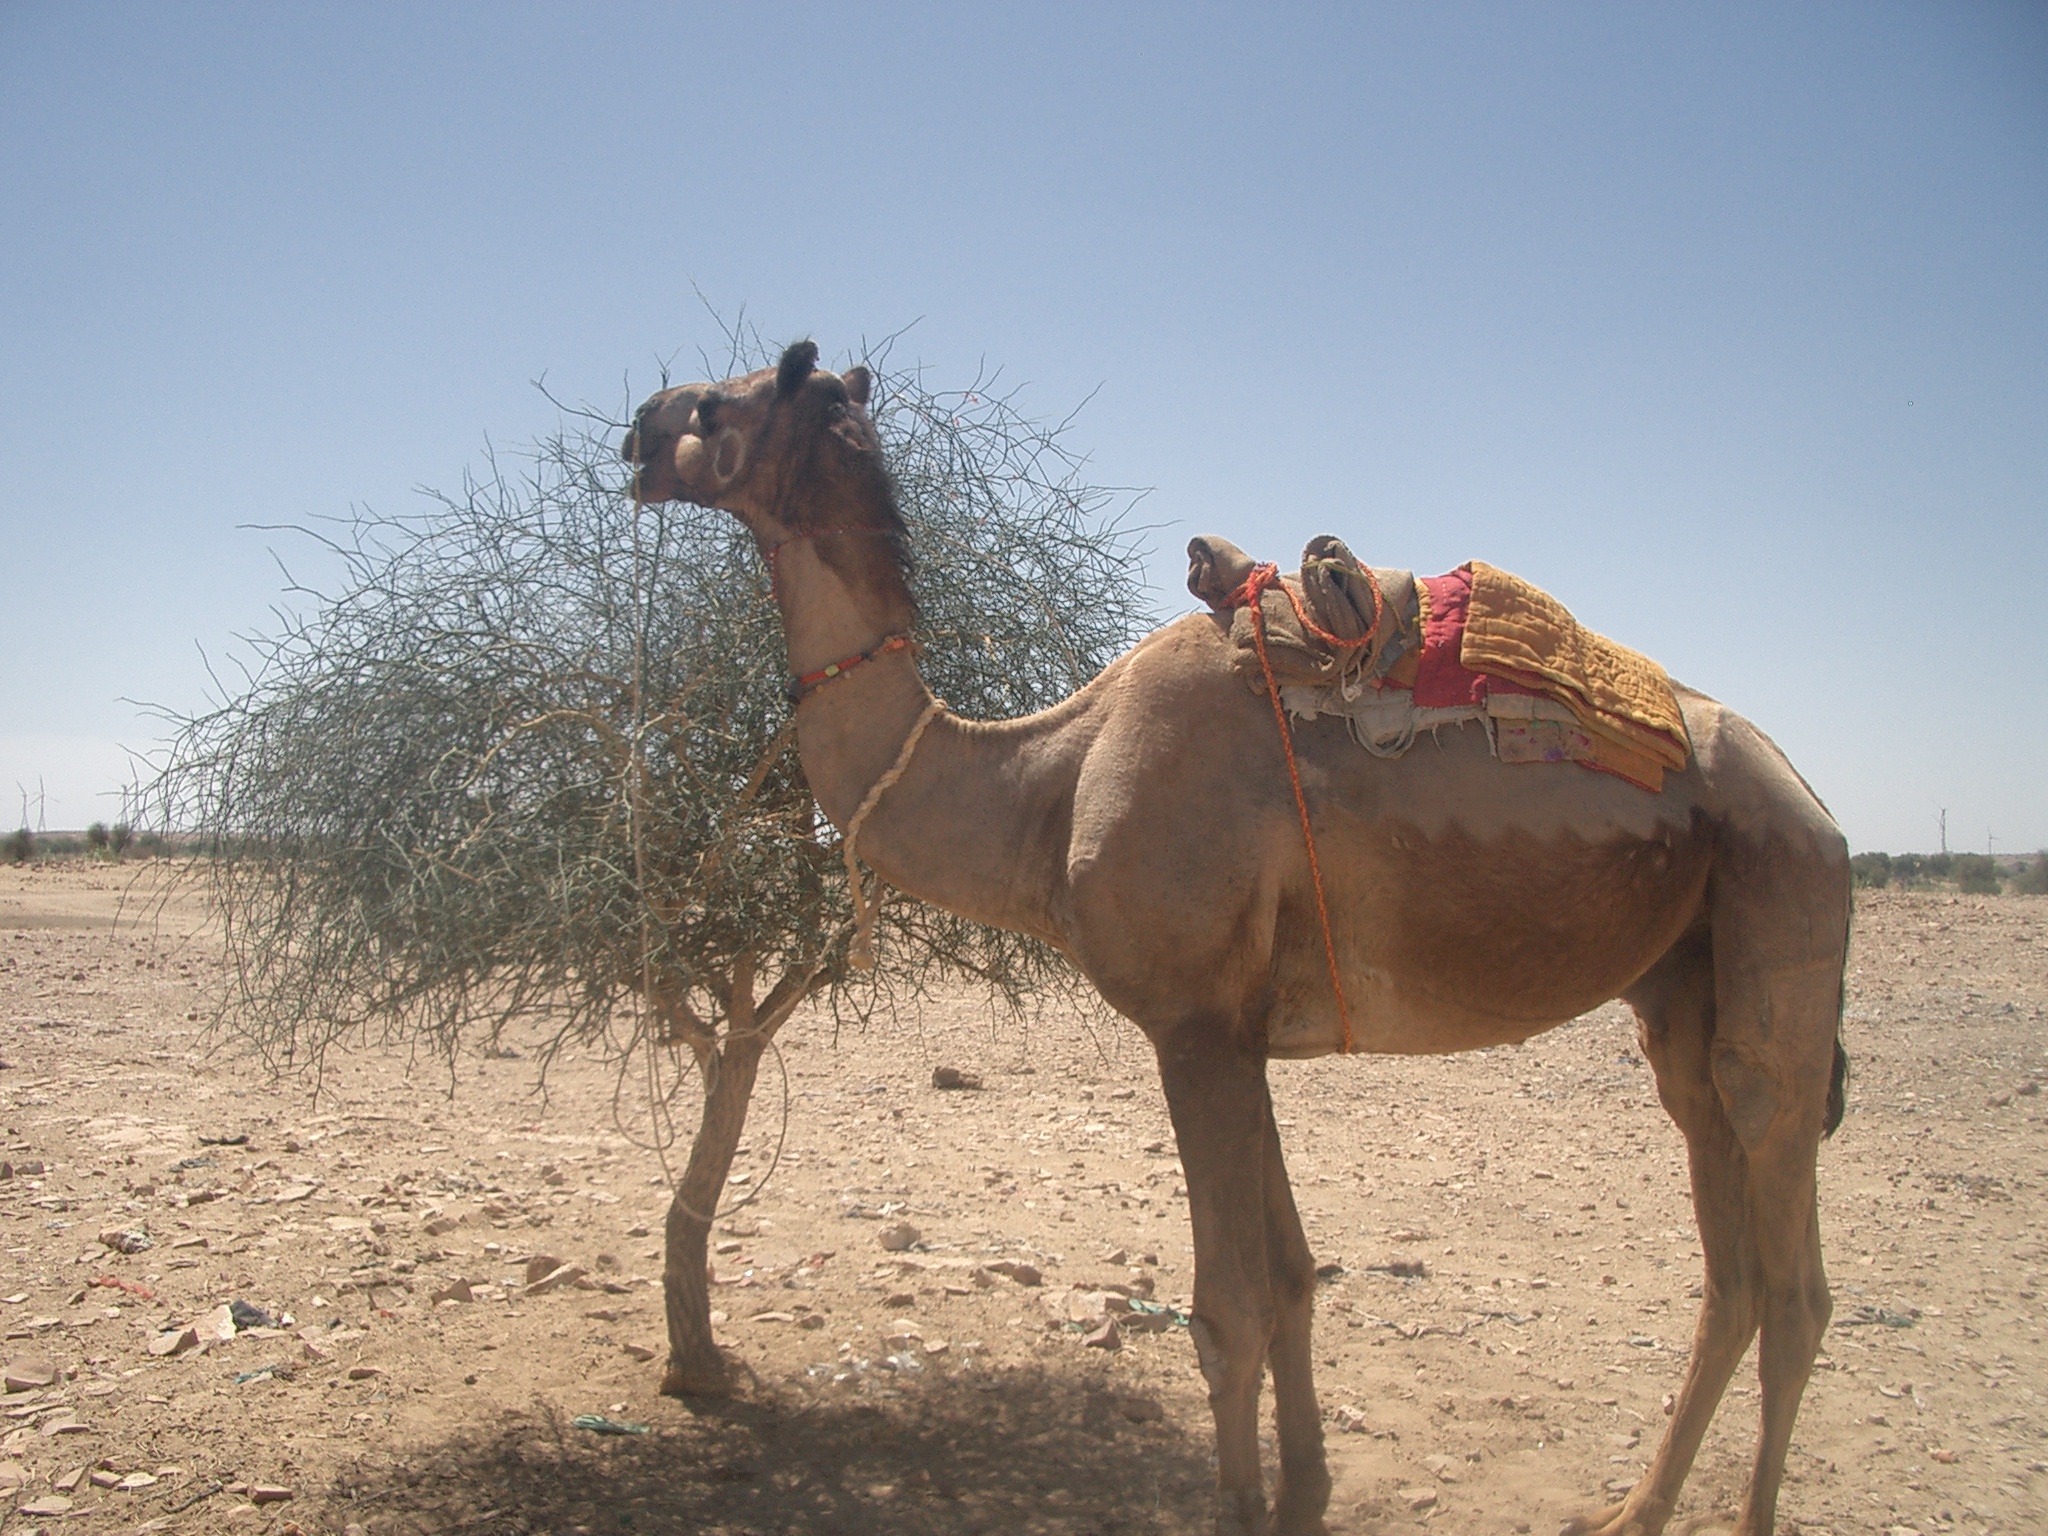 Camel in Desert